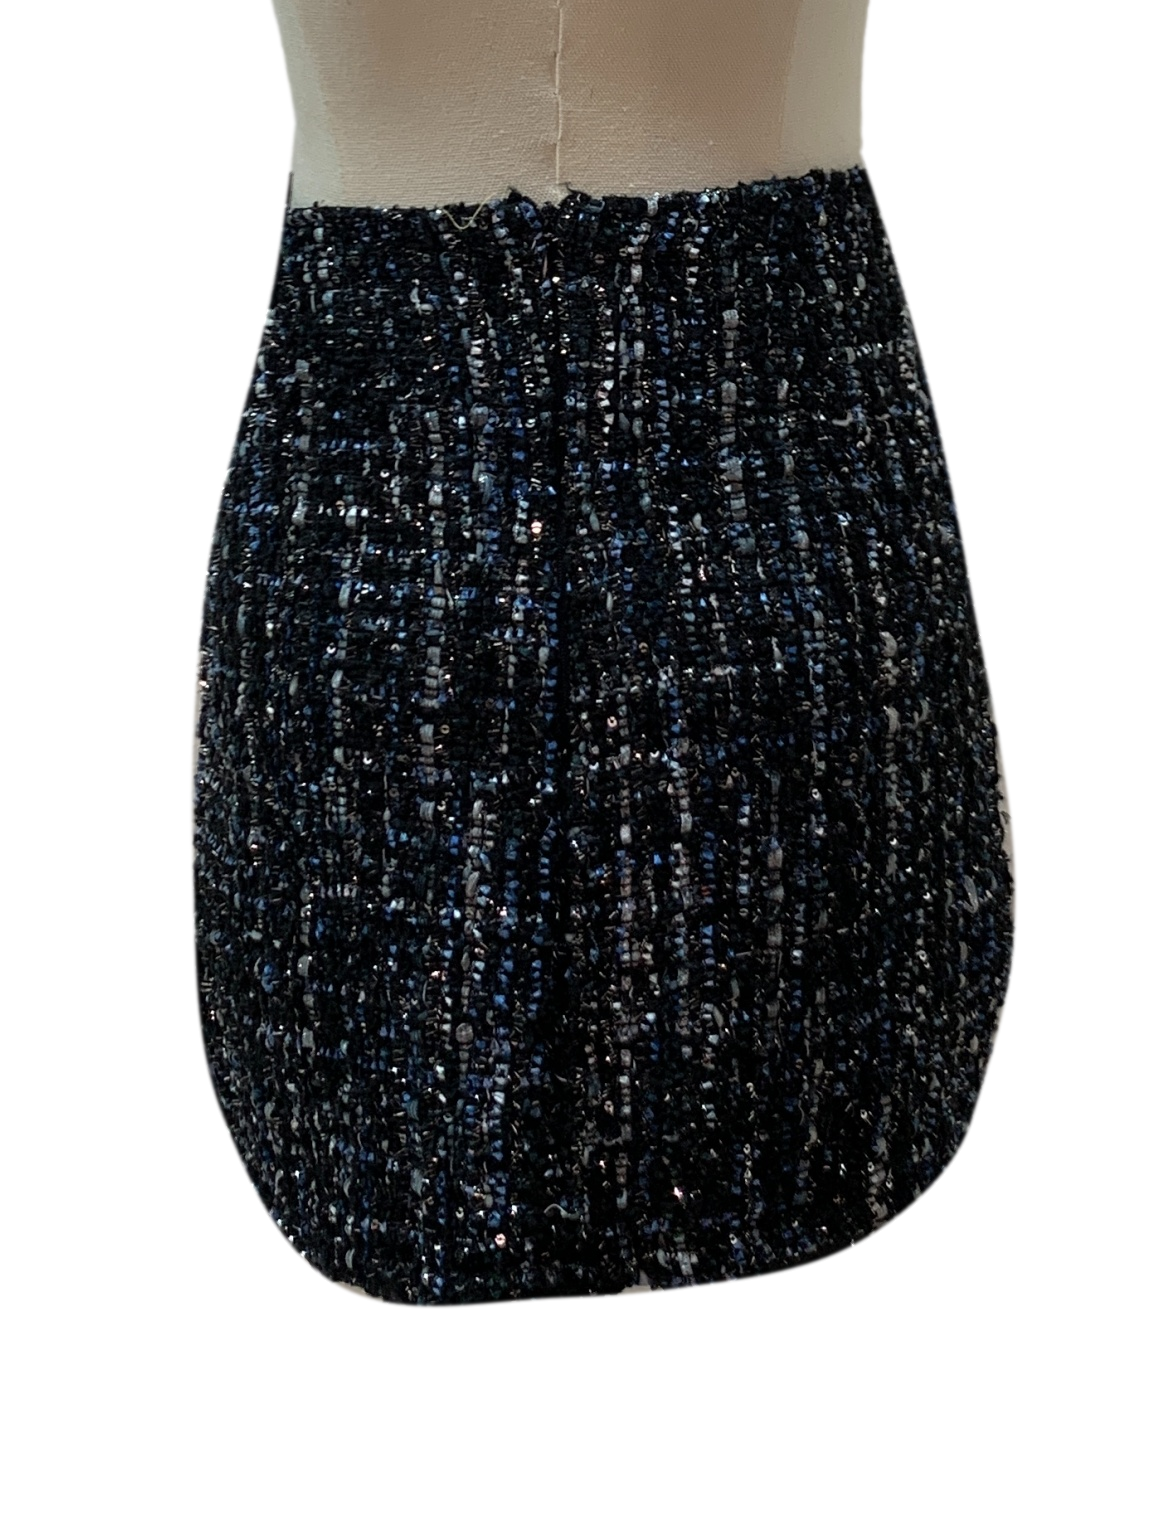 Soot Black Tweed Skirt